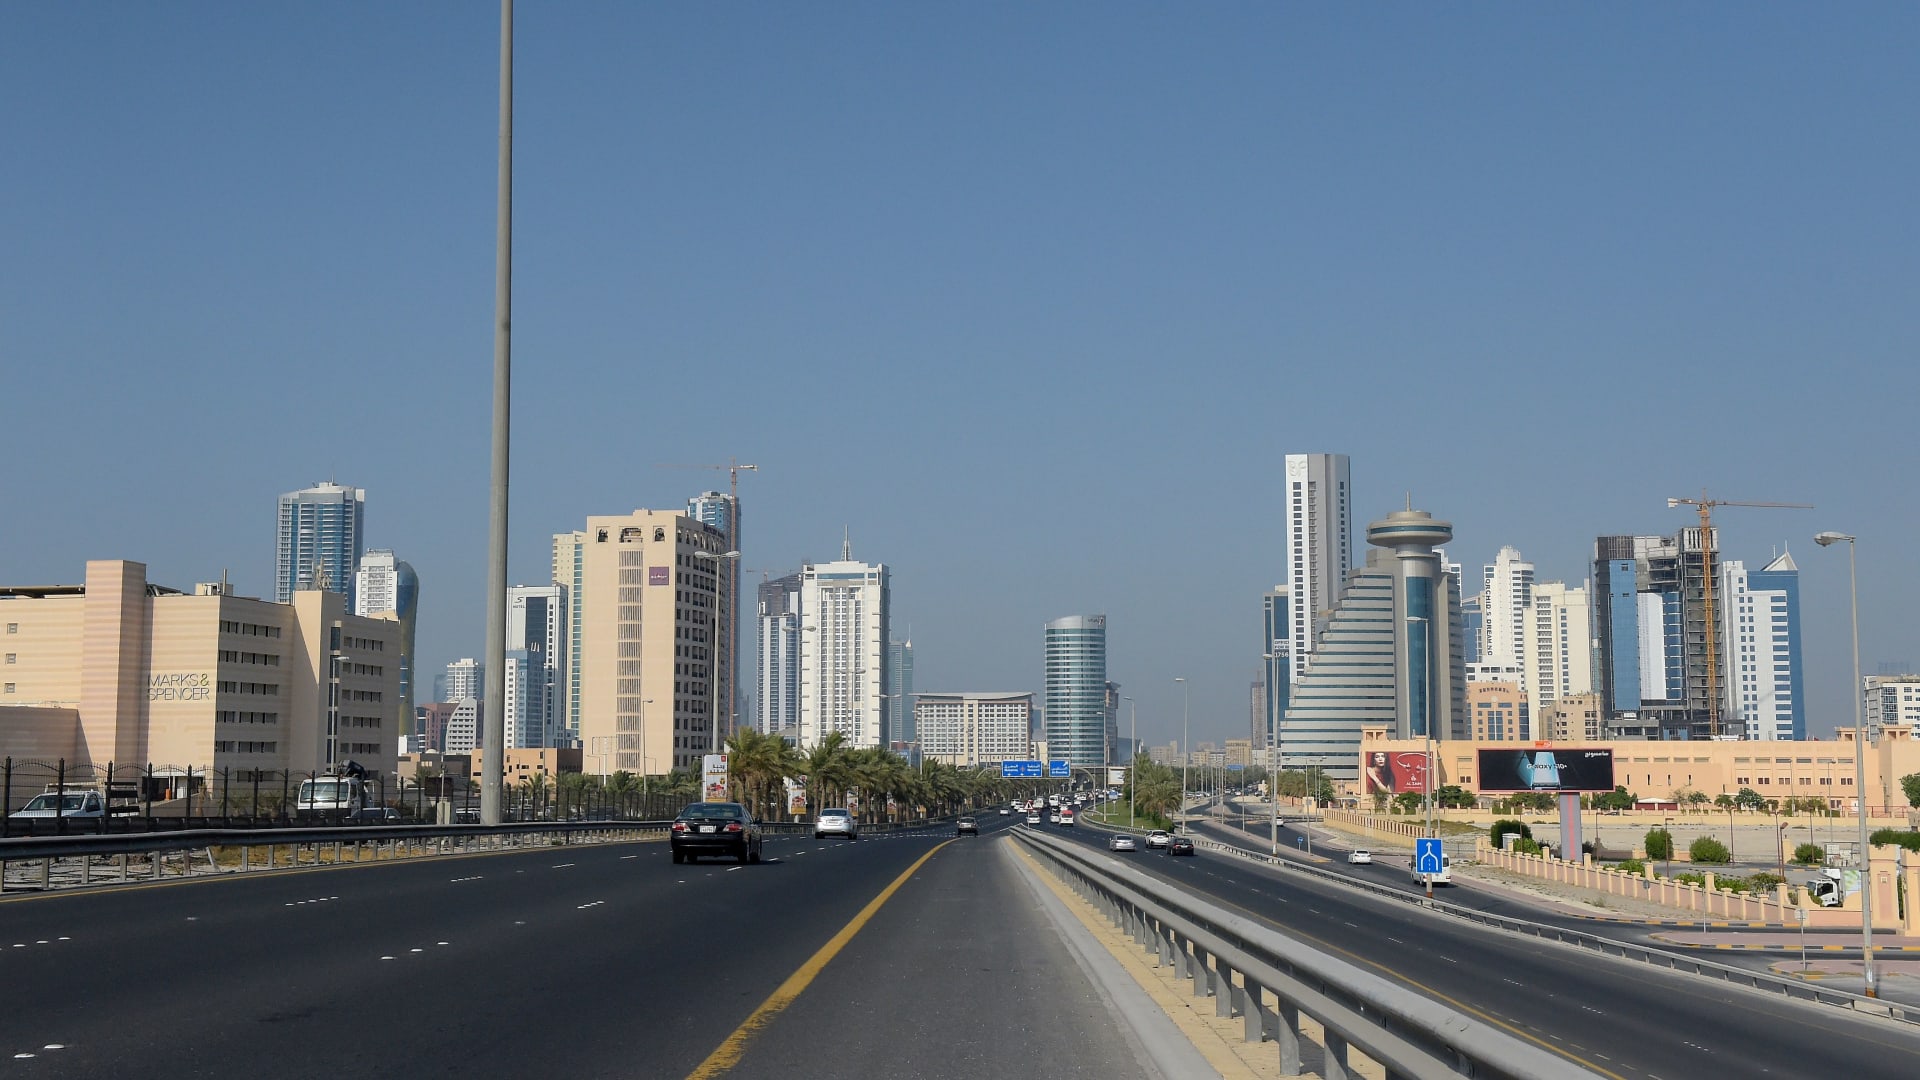 صورة ارشيفية عامة من العاصمة البحرينية، المنامة